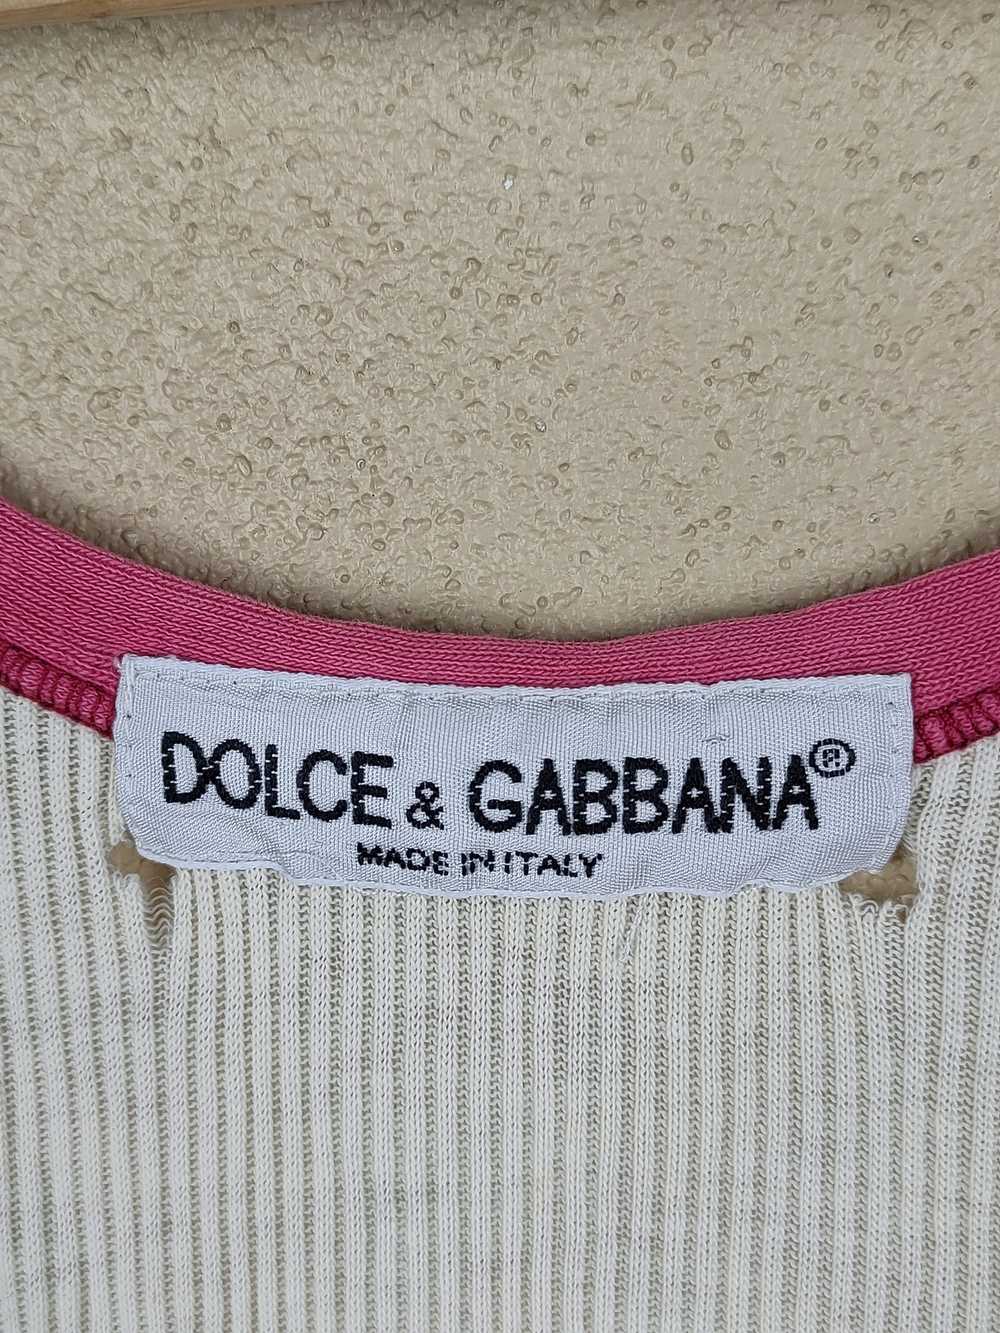 Dolce & Gabbana Dolce & Gabbana Tank Top Shirt - image 5